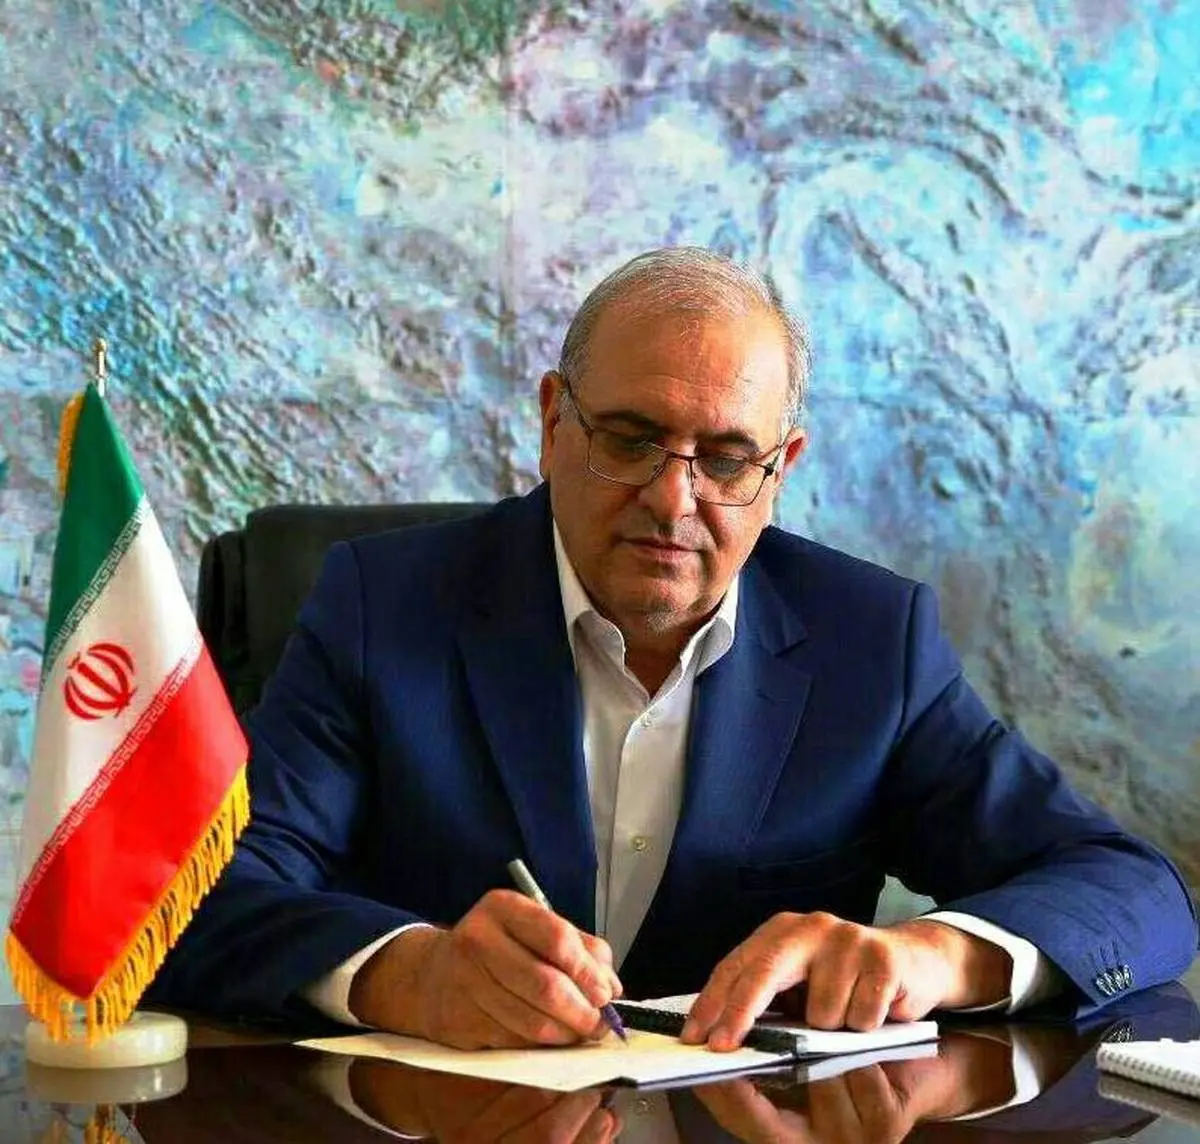 پیام نوروزی مدیرعامل شرکت توسعه منابع آب و نیروی ایران